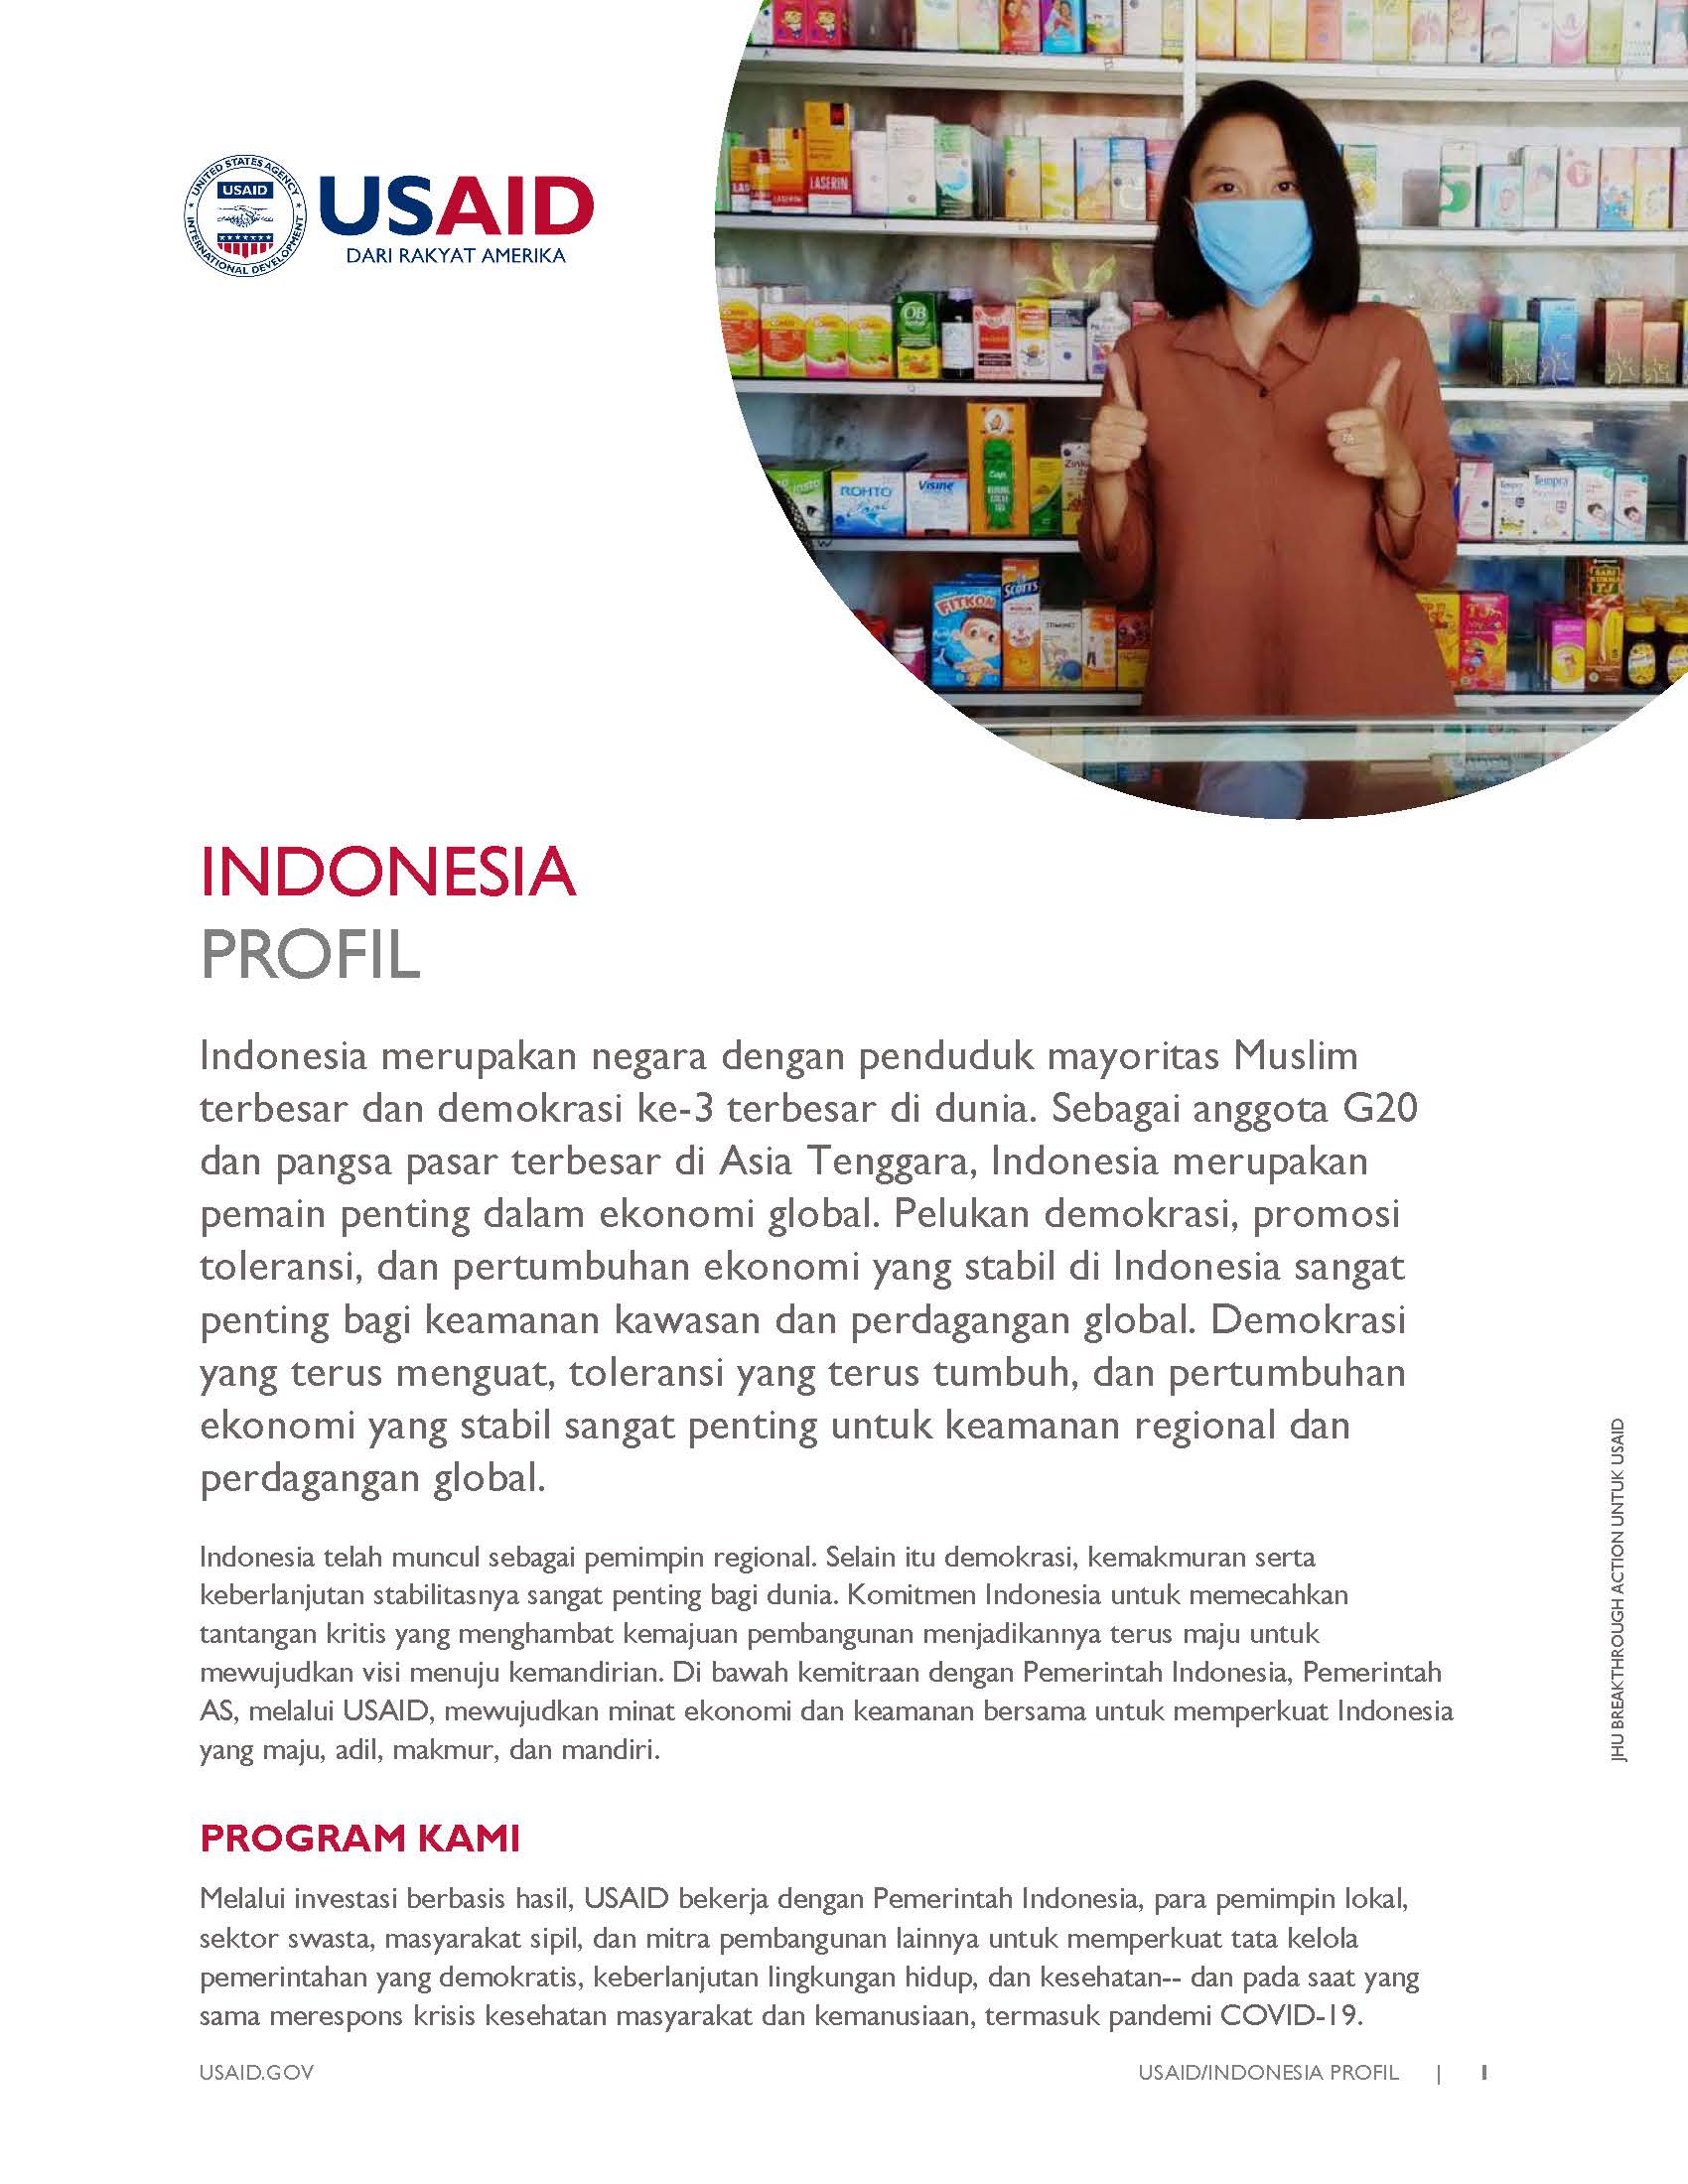 Profil Indonesia